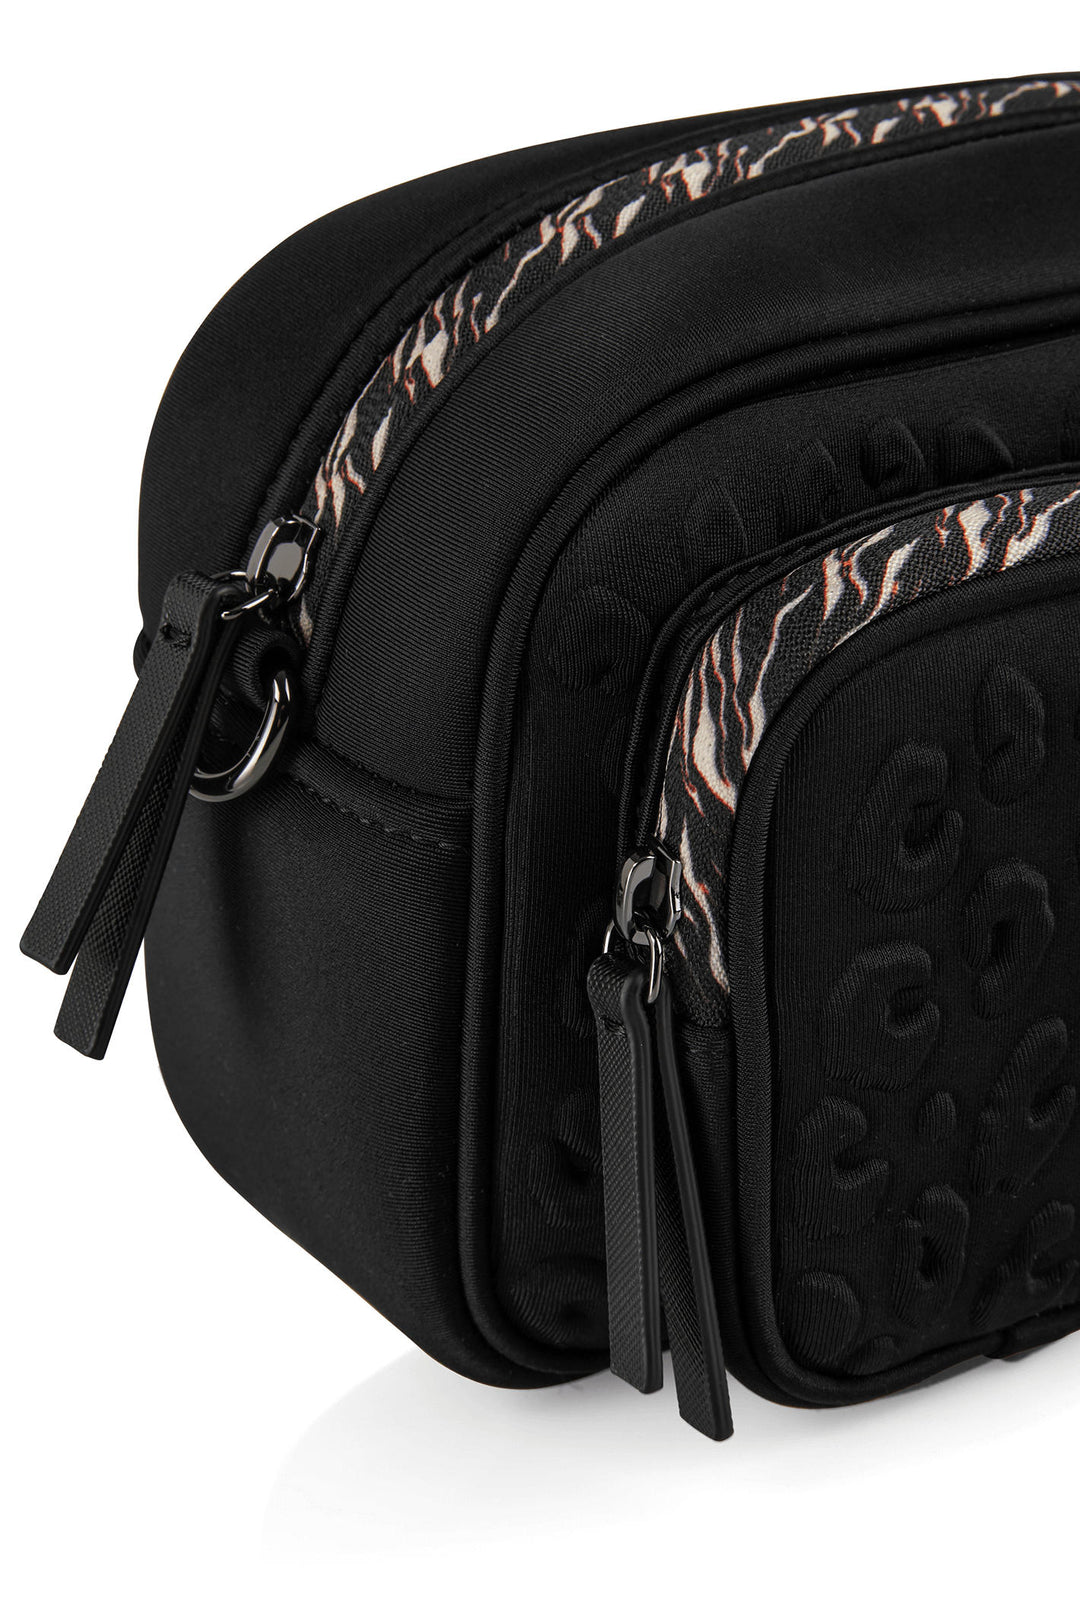 Marc Cain VB TI.14 J01 Black Shoulder Bag - Olivia Grace Fashion